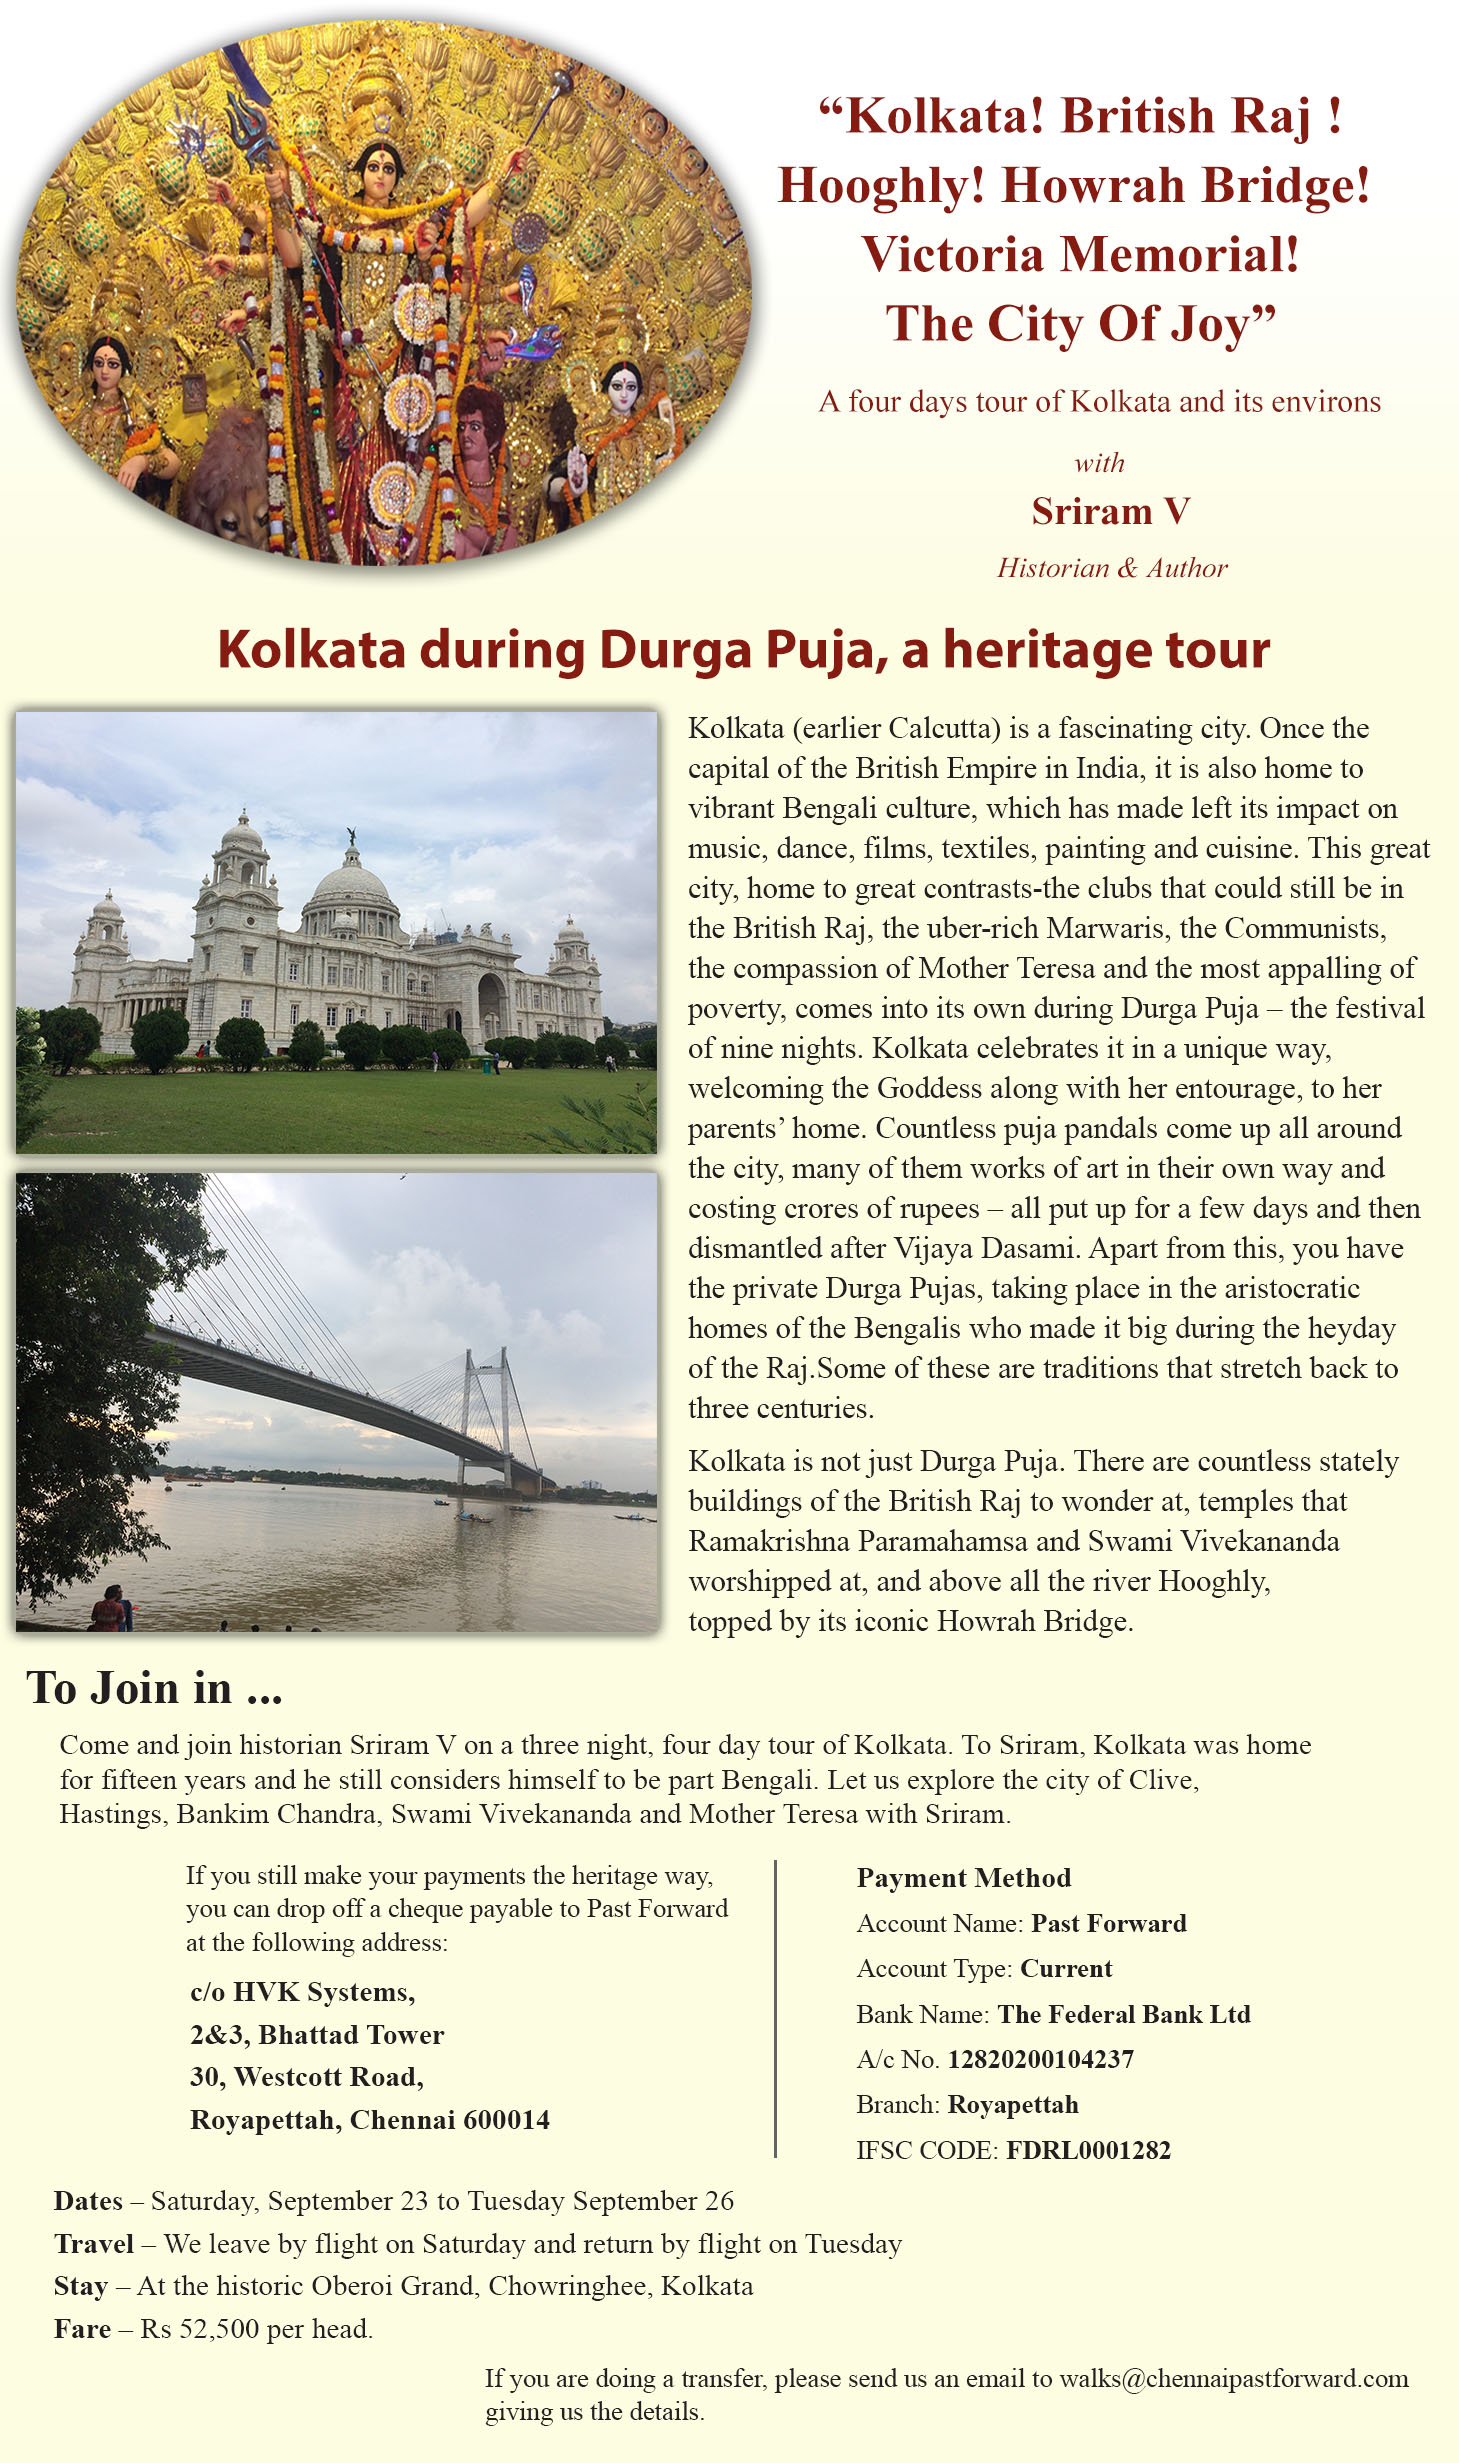 Heritage Tour of Kolkata during Durga Puja